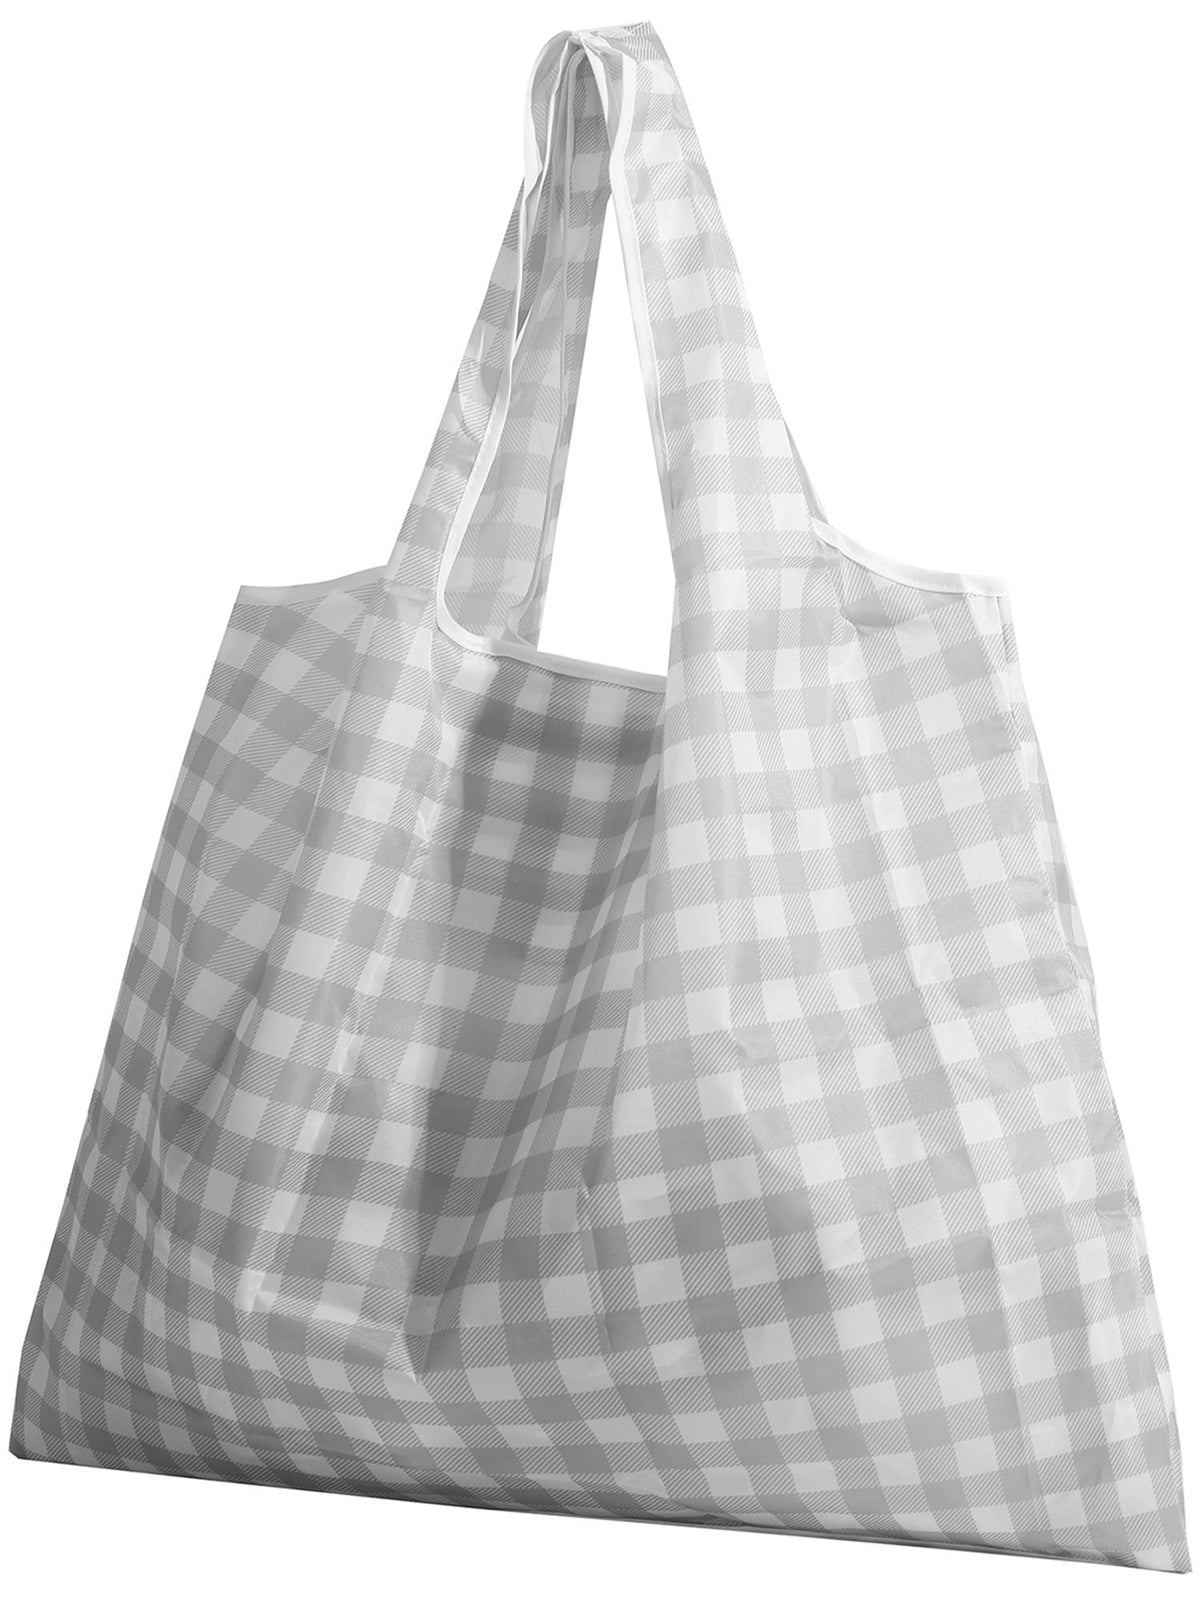 Smoky Gray Check Reusable Shopping Bag